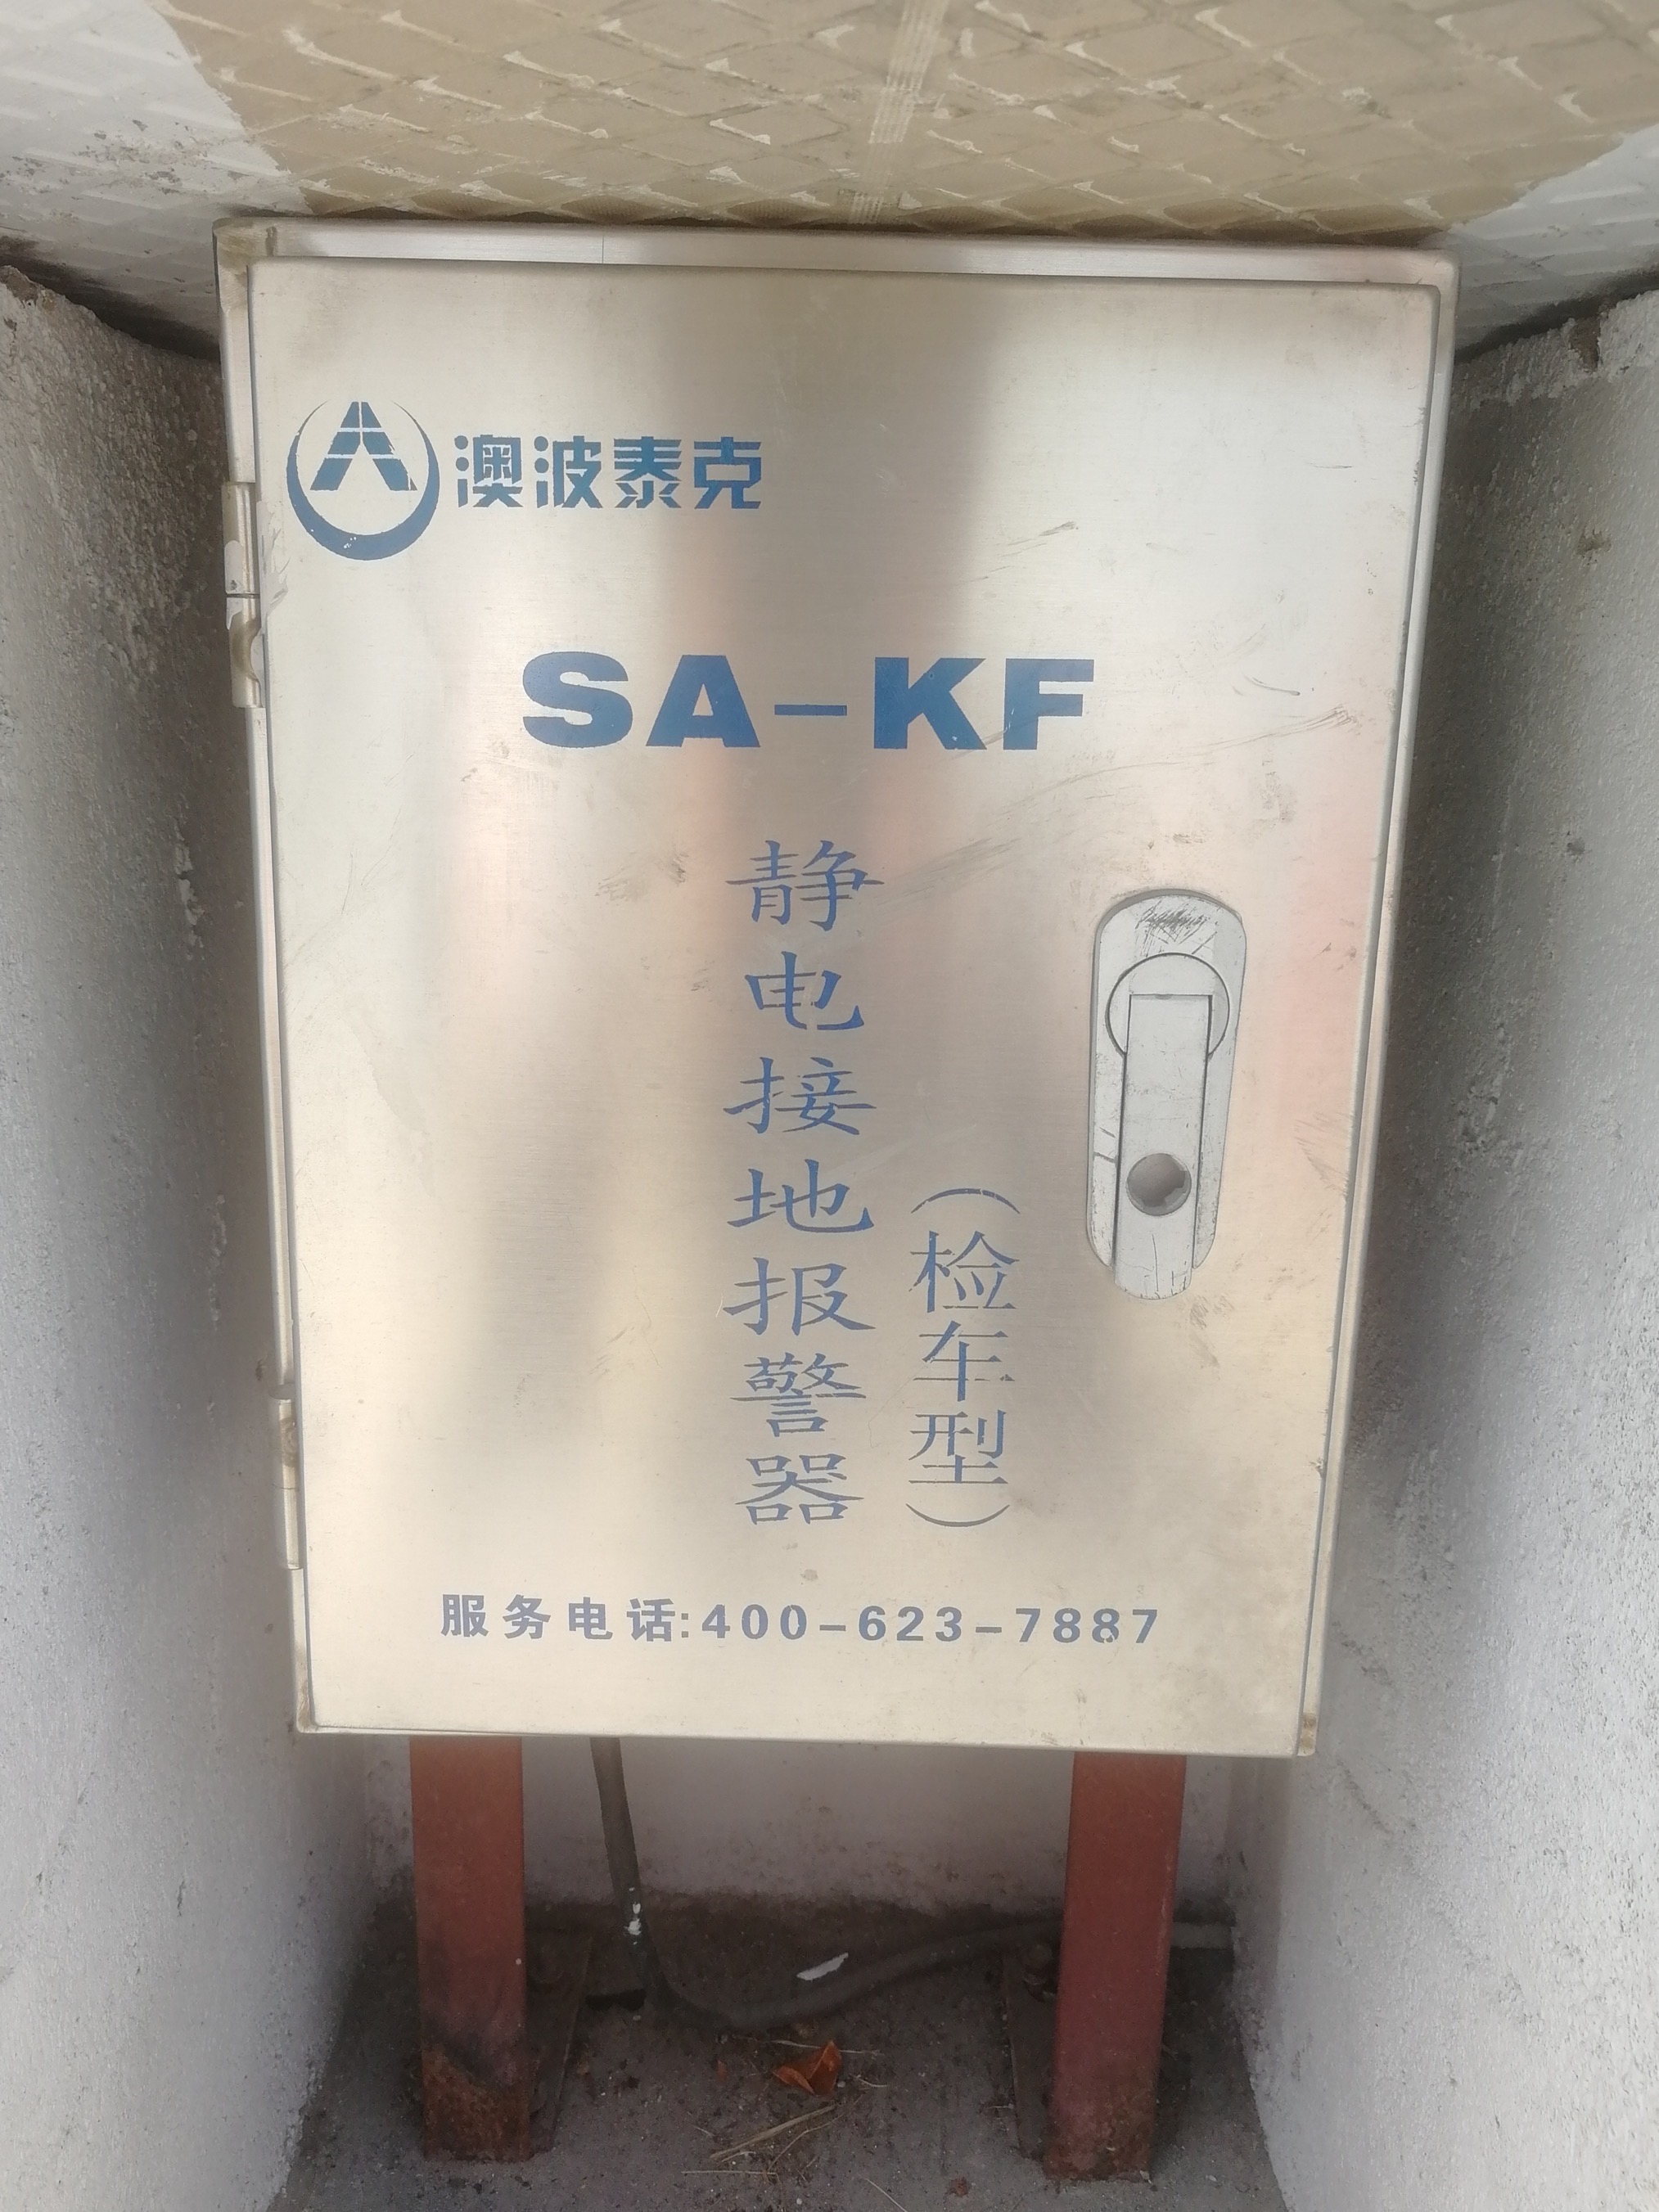 SA-KP移动式静电接地报警器原理图